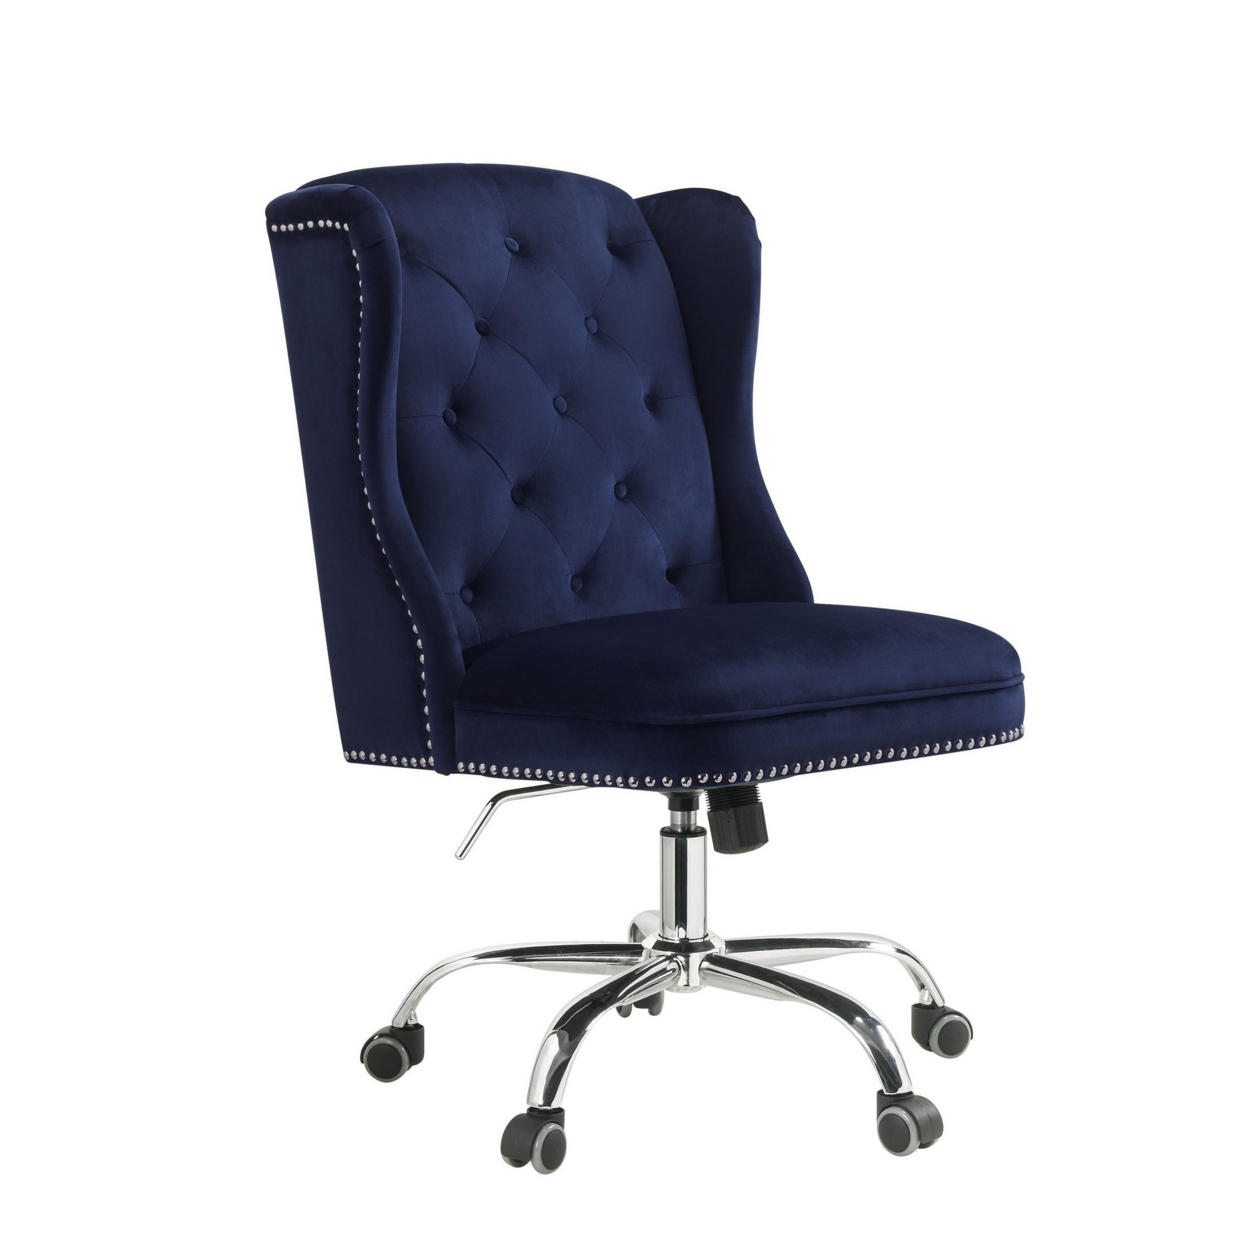 Velvet Upholstered Armless Swivel And Adjustable Tufted Office Chair, Blue- Saltoro Sherpi